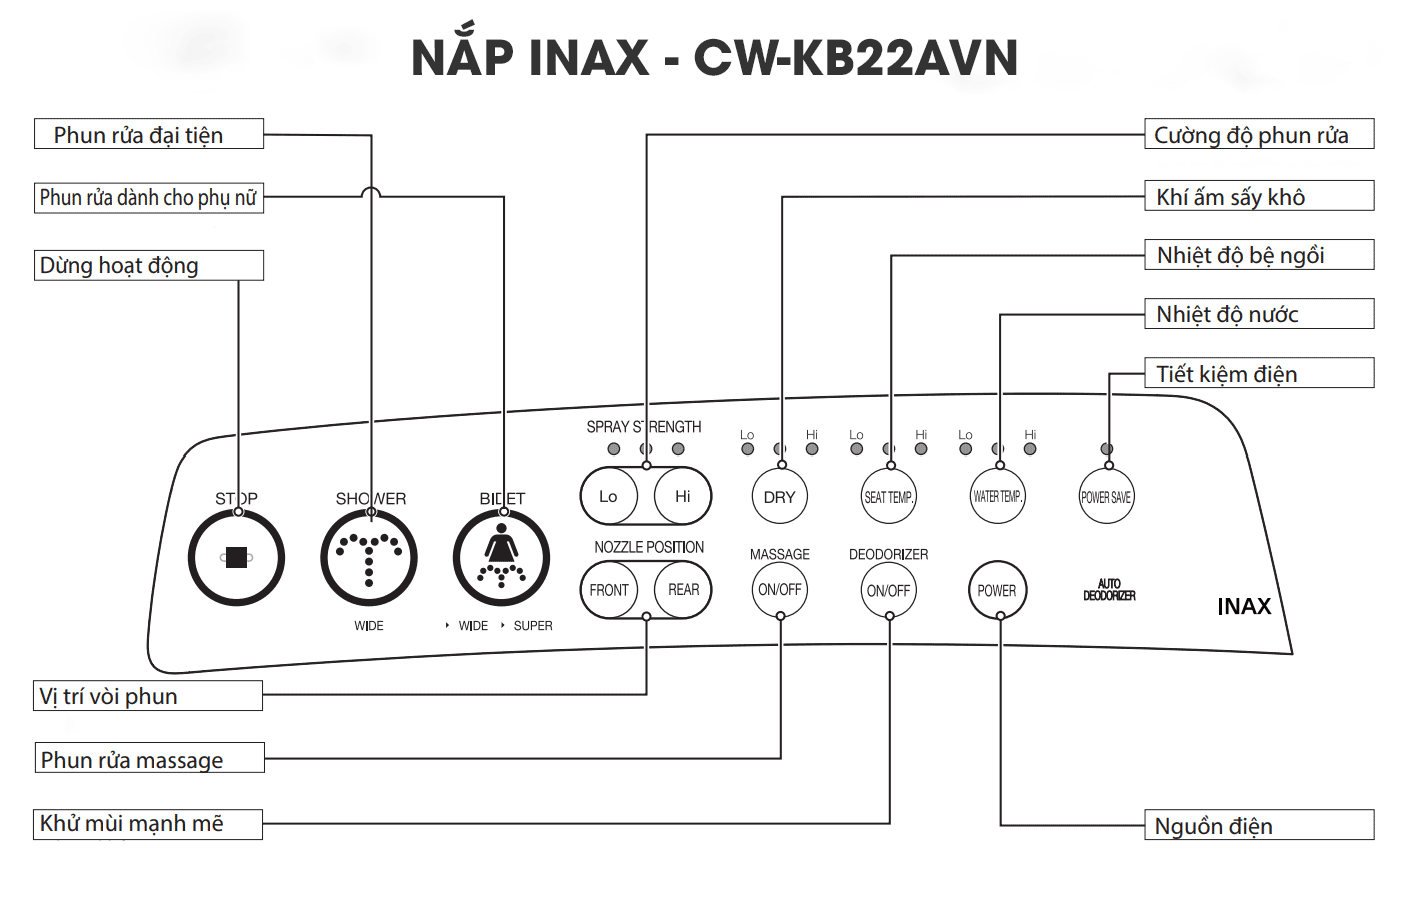 Nắp rửa điện tử INAX CW-KB22AVN các tính năng